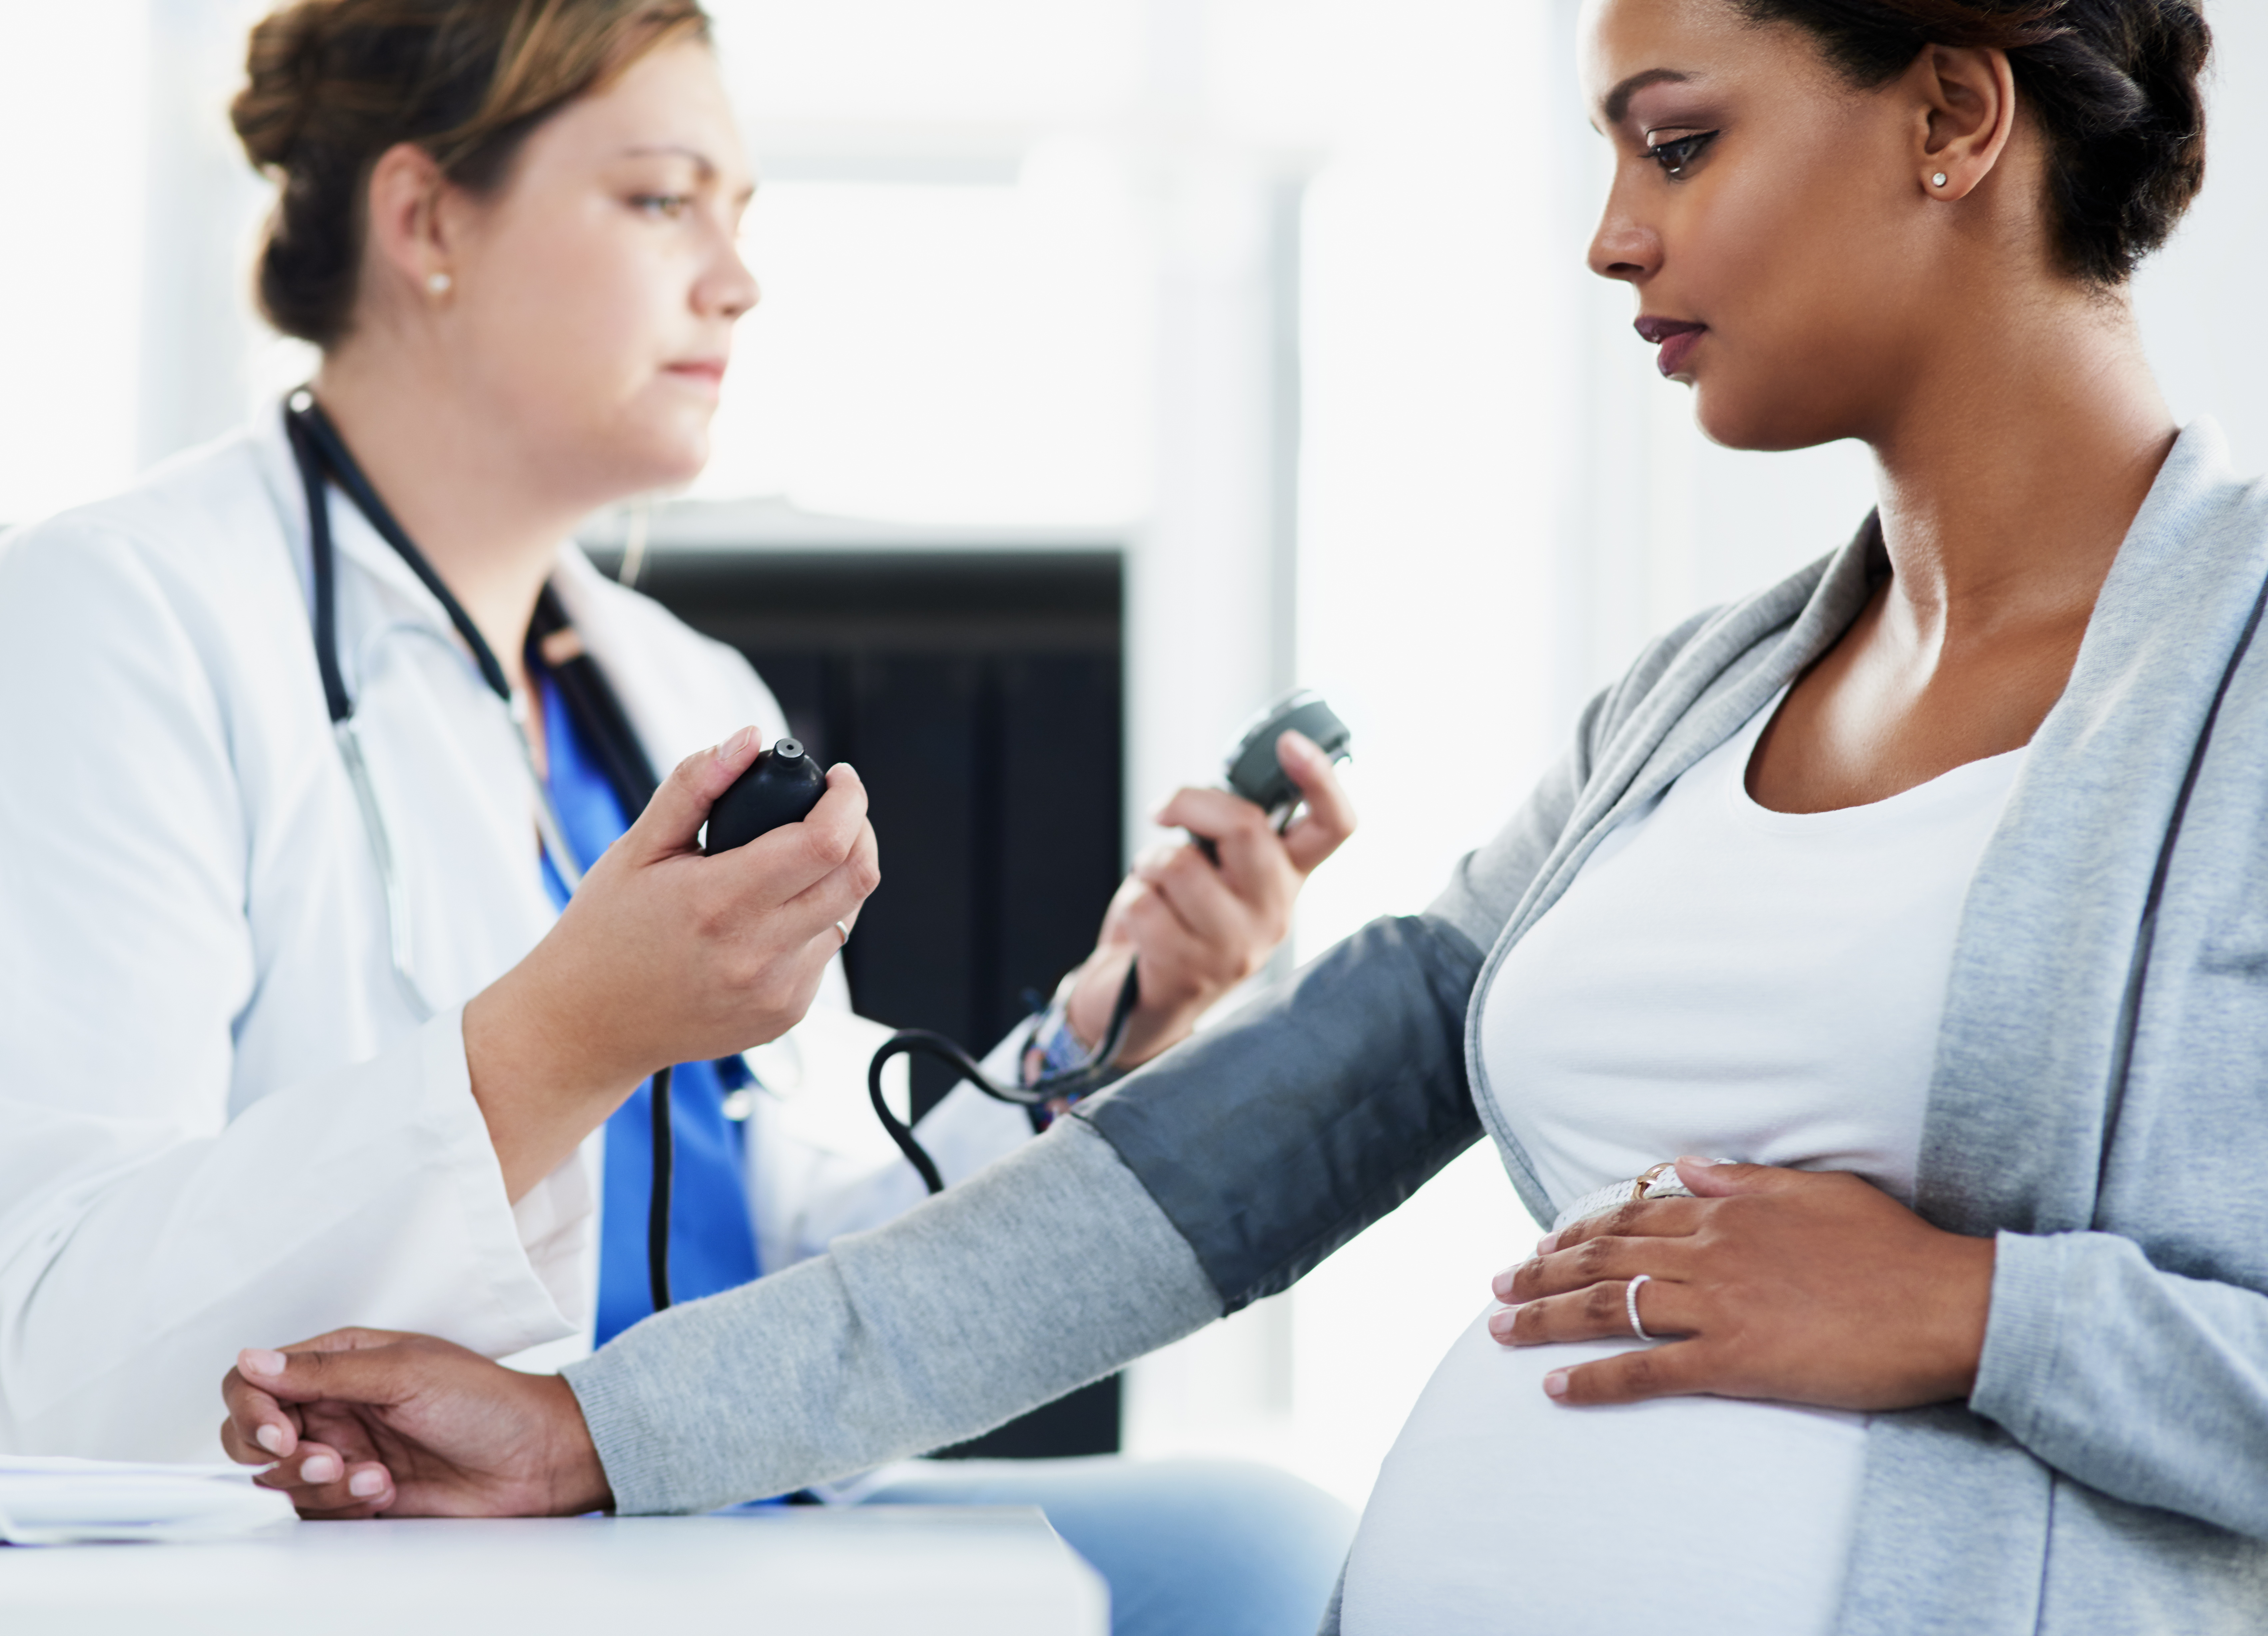 Comment le métabolisme des graisses maternelles au début de la grossesse influence la croissance abdominale du fœtus puis le poids et l'adiposité de l'enfant à l'âge de 2 ans (Visuel Adobe Stock 493556518). 